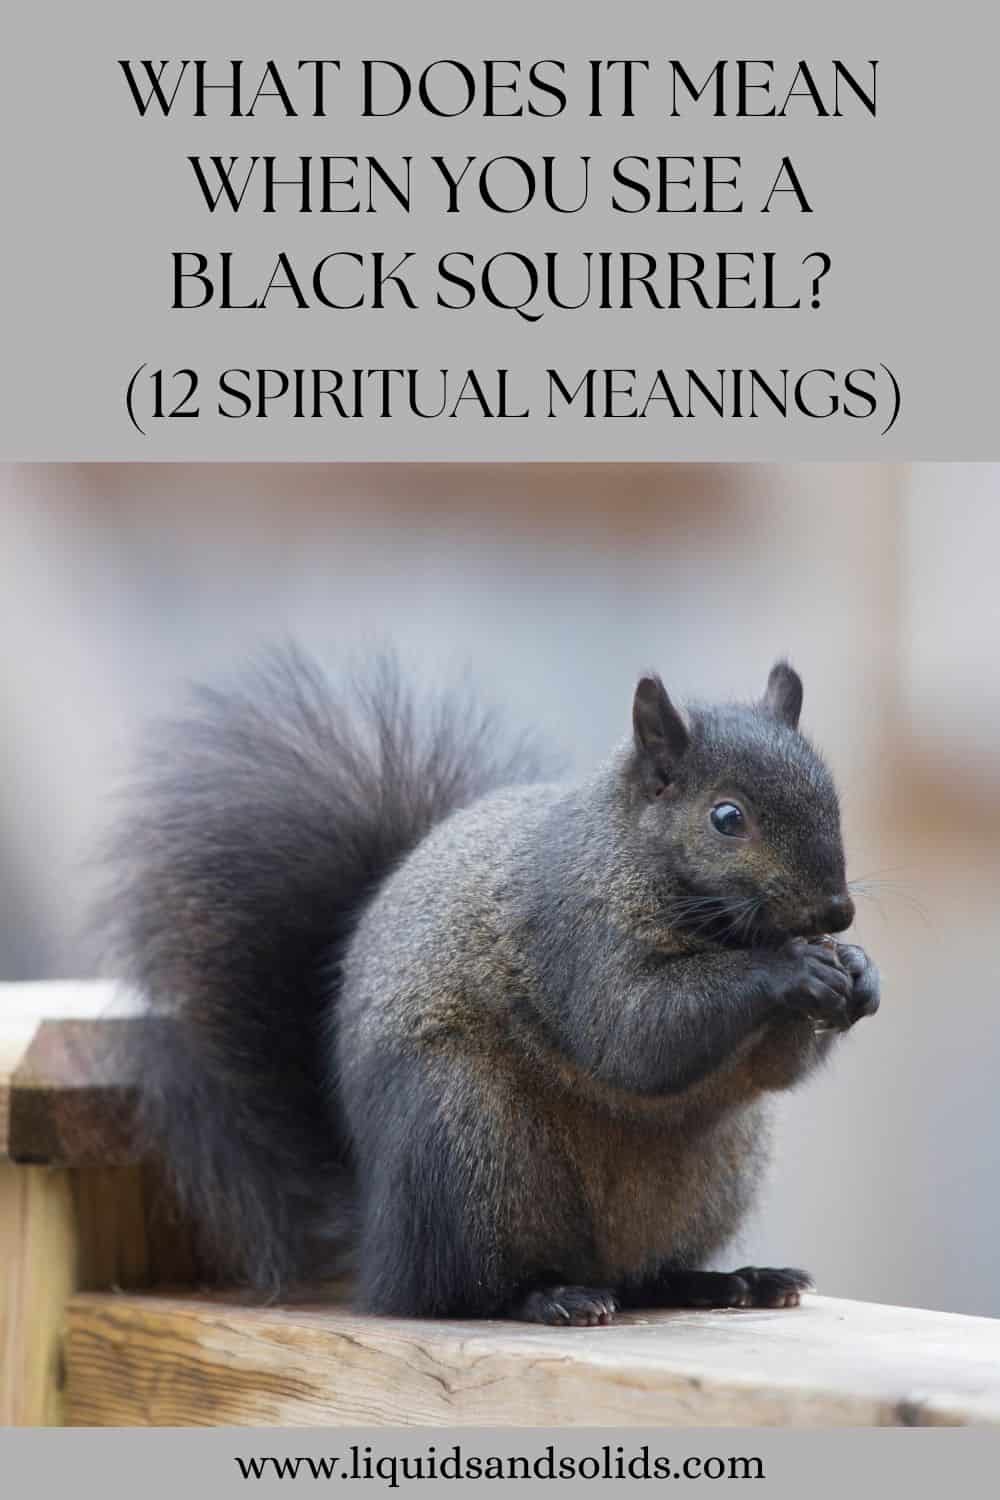  Mida tähendab see, kui sa näed musta oravat? (12 vaimset tähendust)